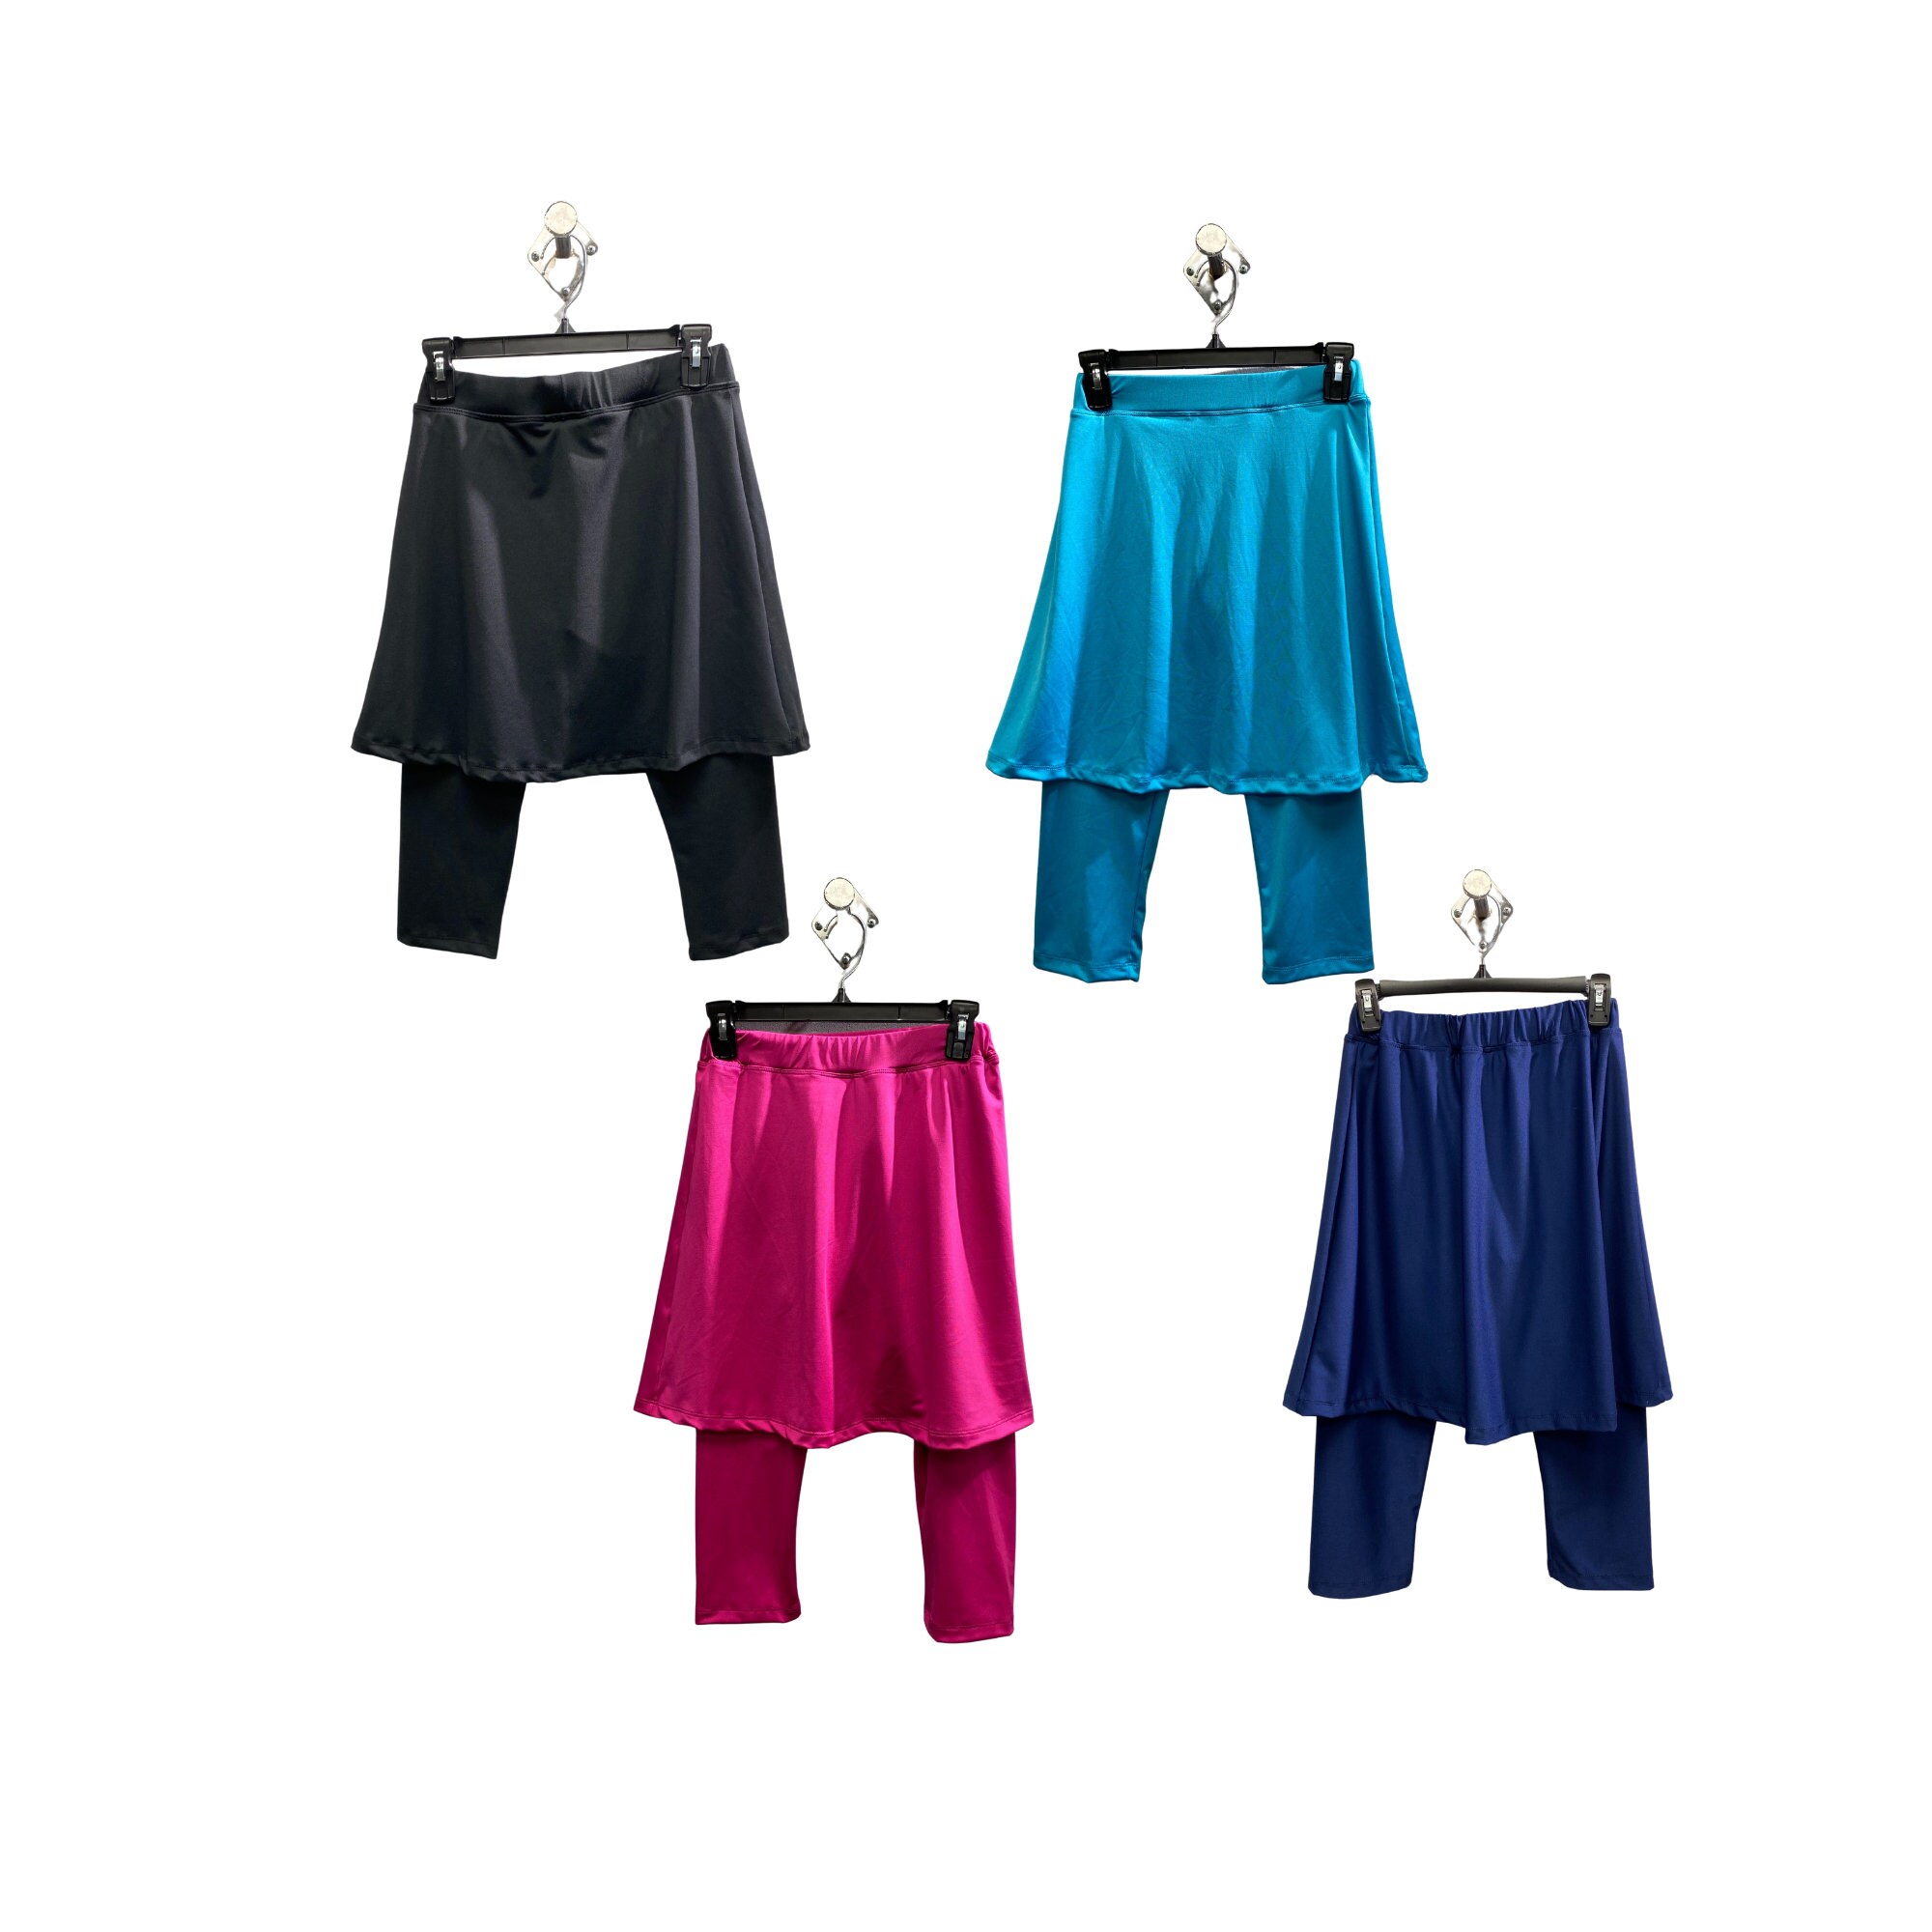 Skirt for Leggings / Shirt Extender / Boho Skirt Short / Fleece Skirt /  Layer Skirt / Yoga Warmers / Athleisure / Cover up / Hippie Skirt 